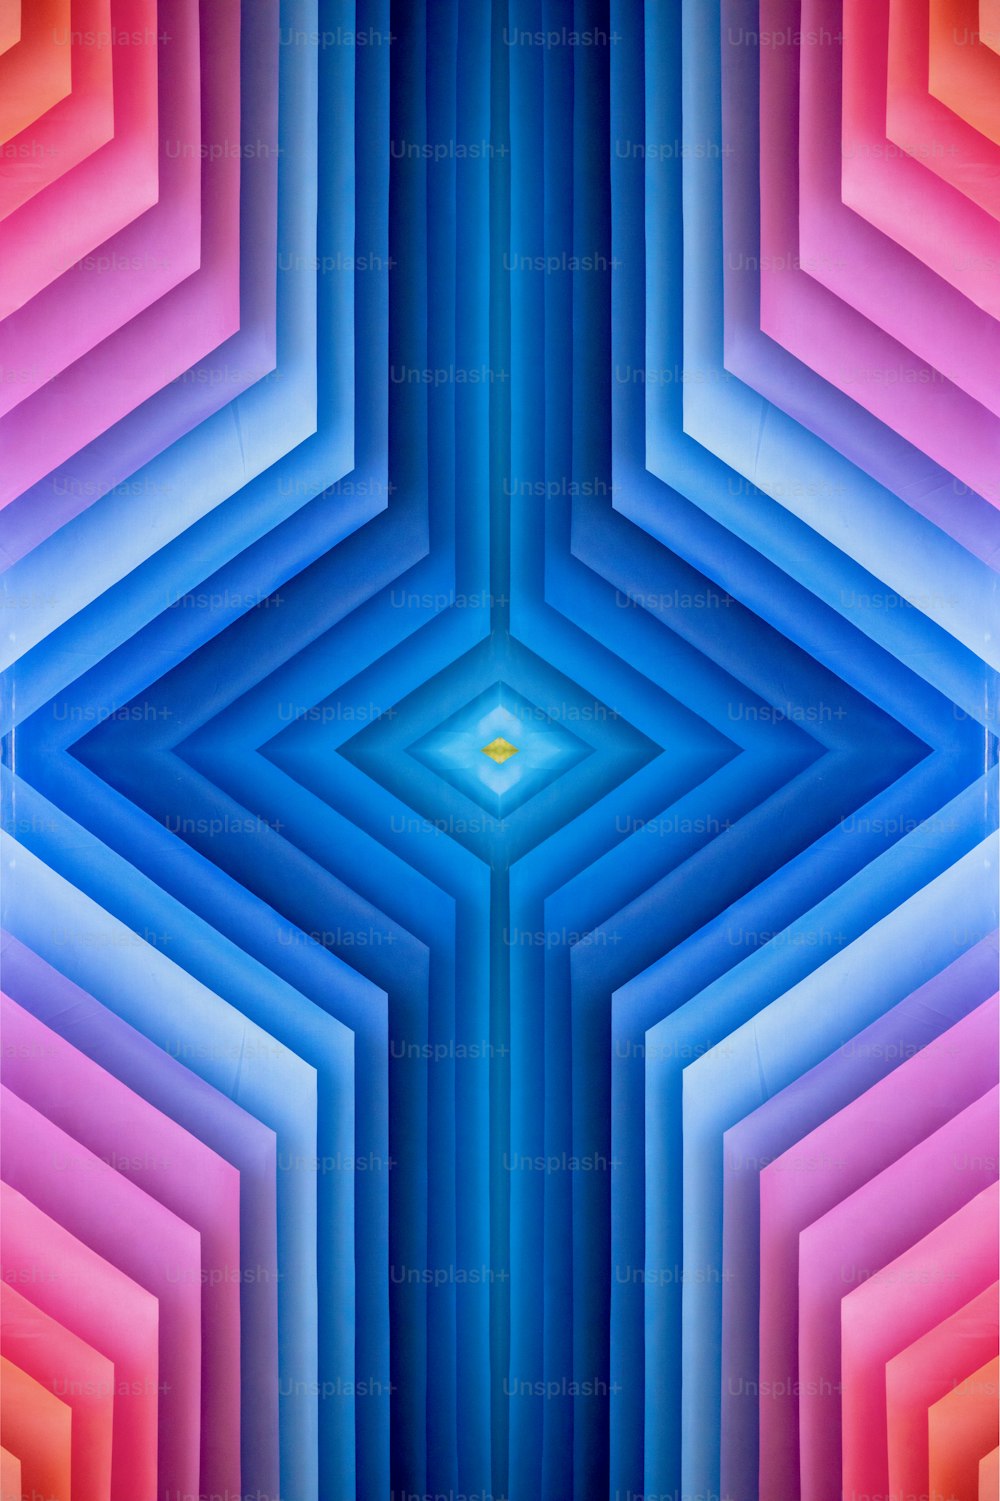 육각형 패턴이 있는 다채로운 추상적인 배경